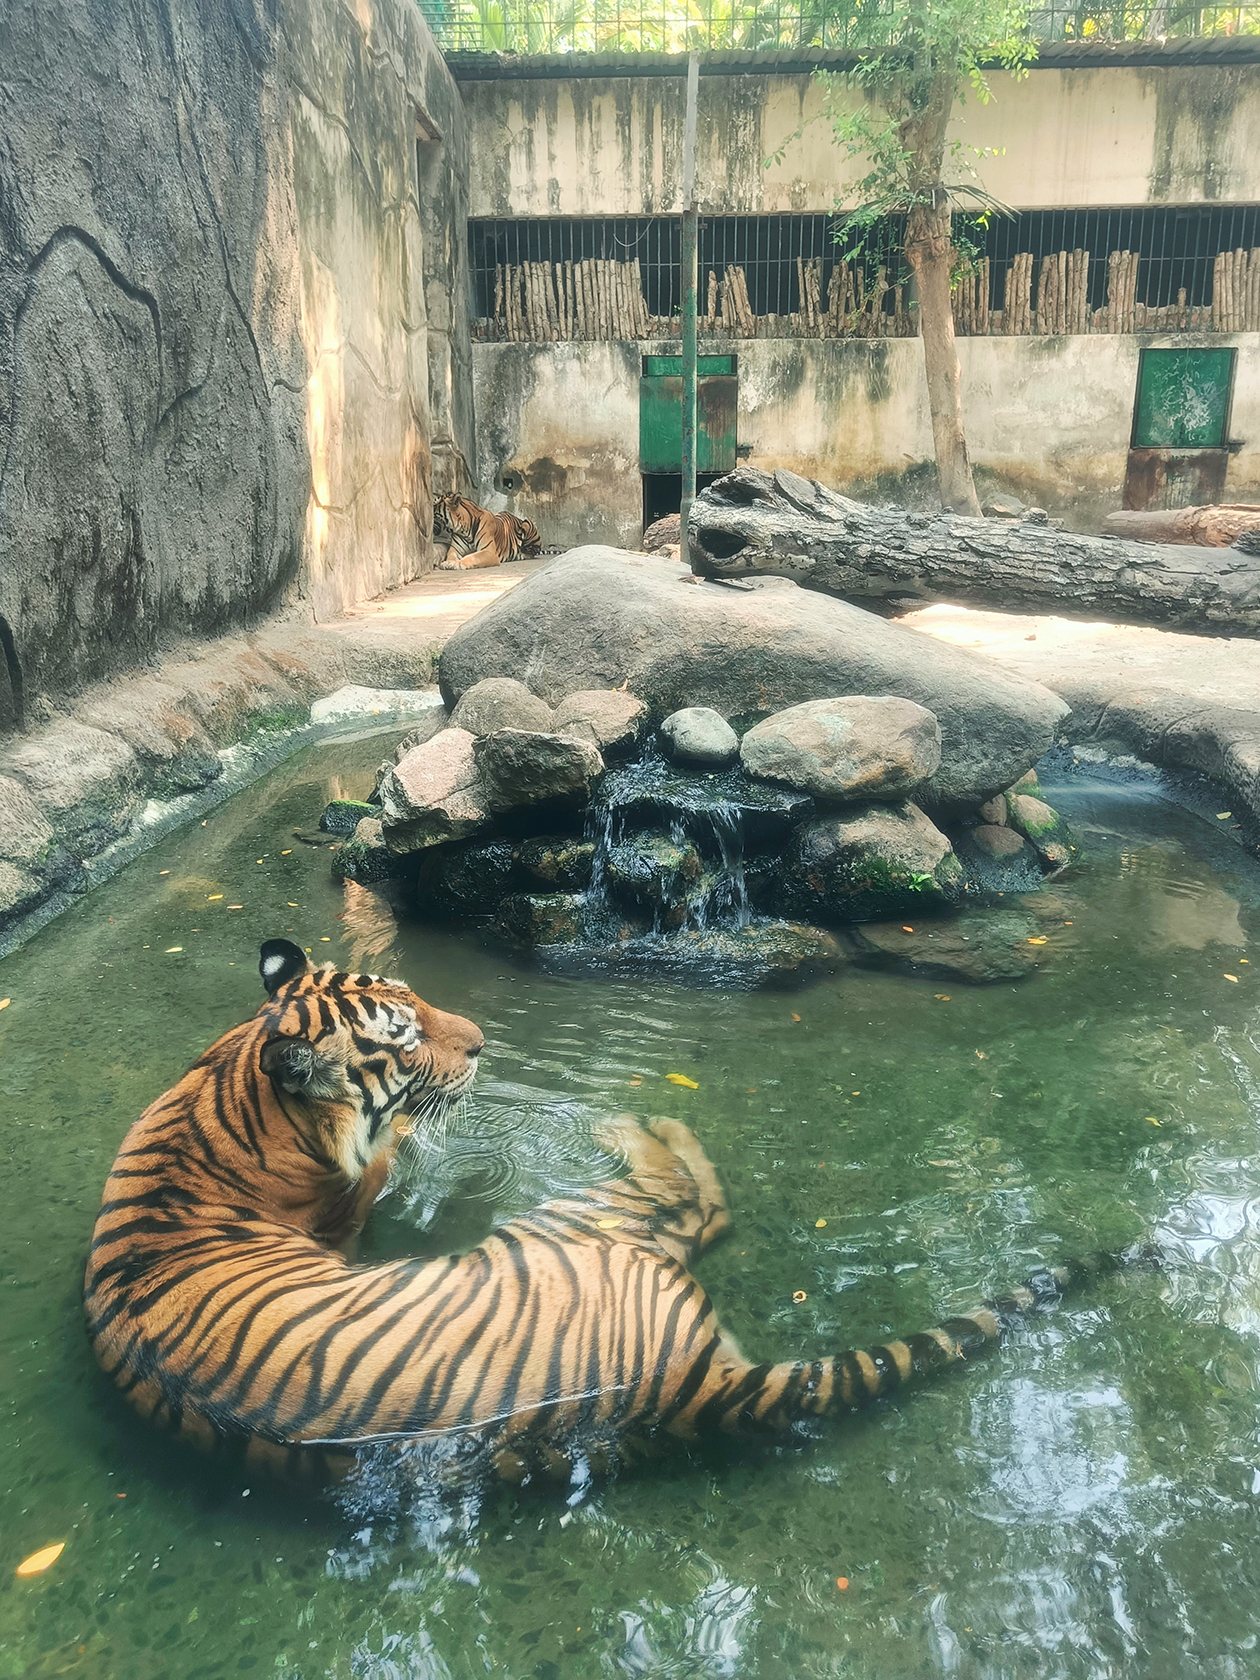 Духота при +37 °C вынуждает тигра на отчаянные меры